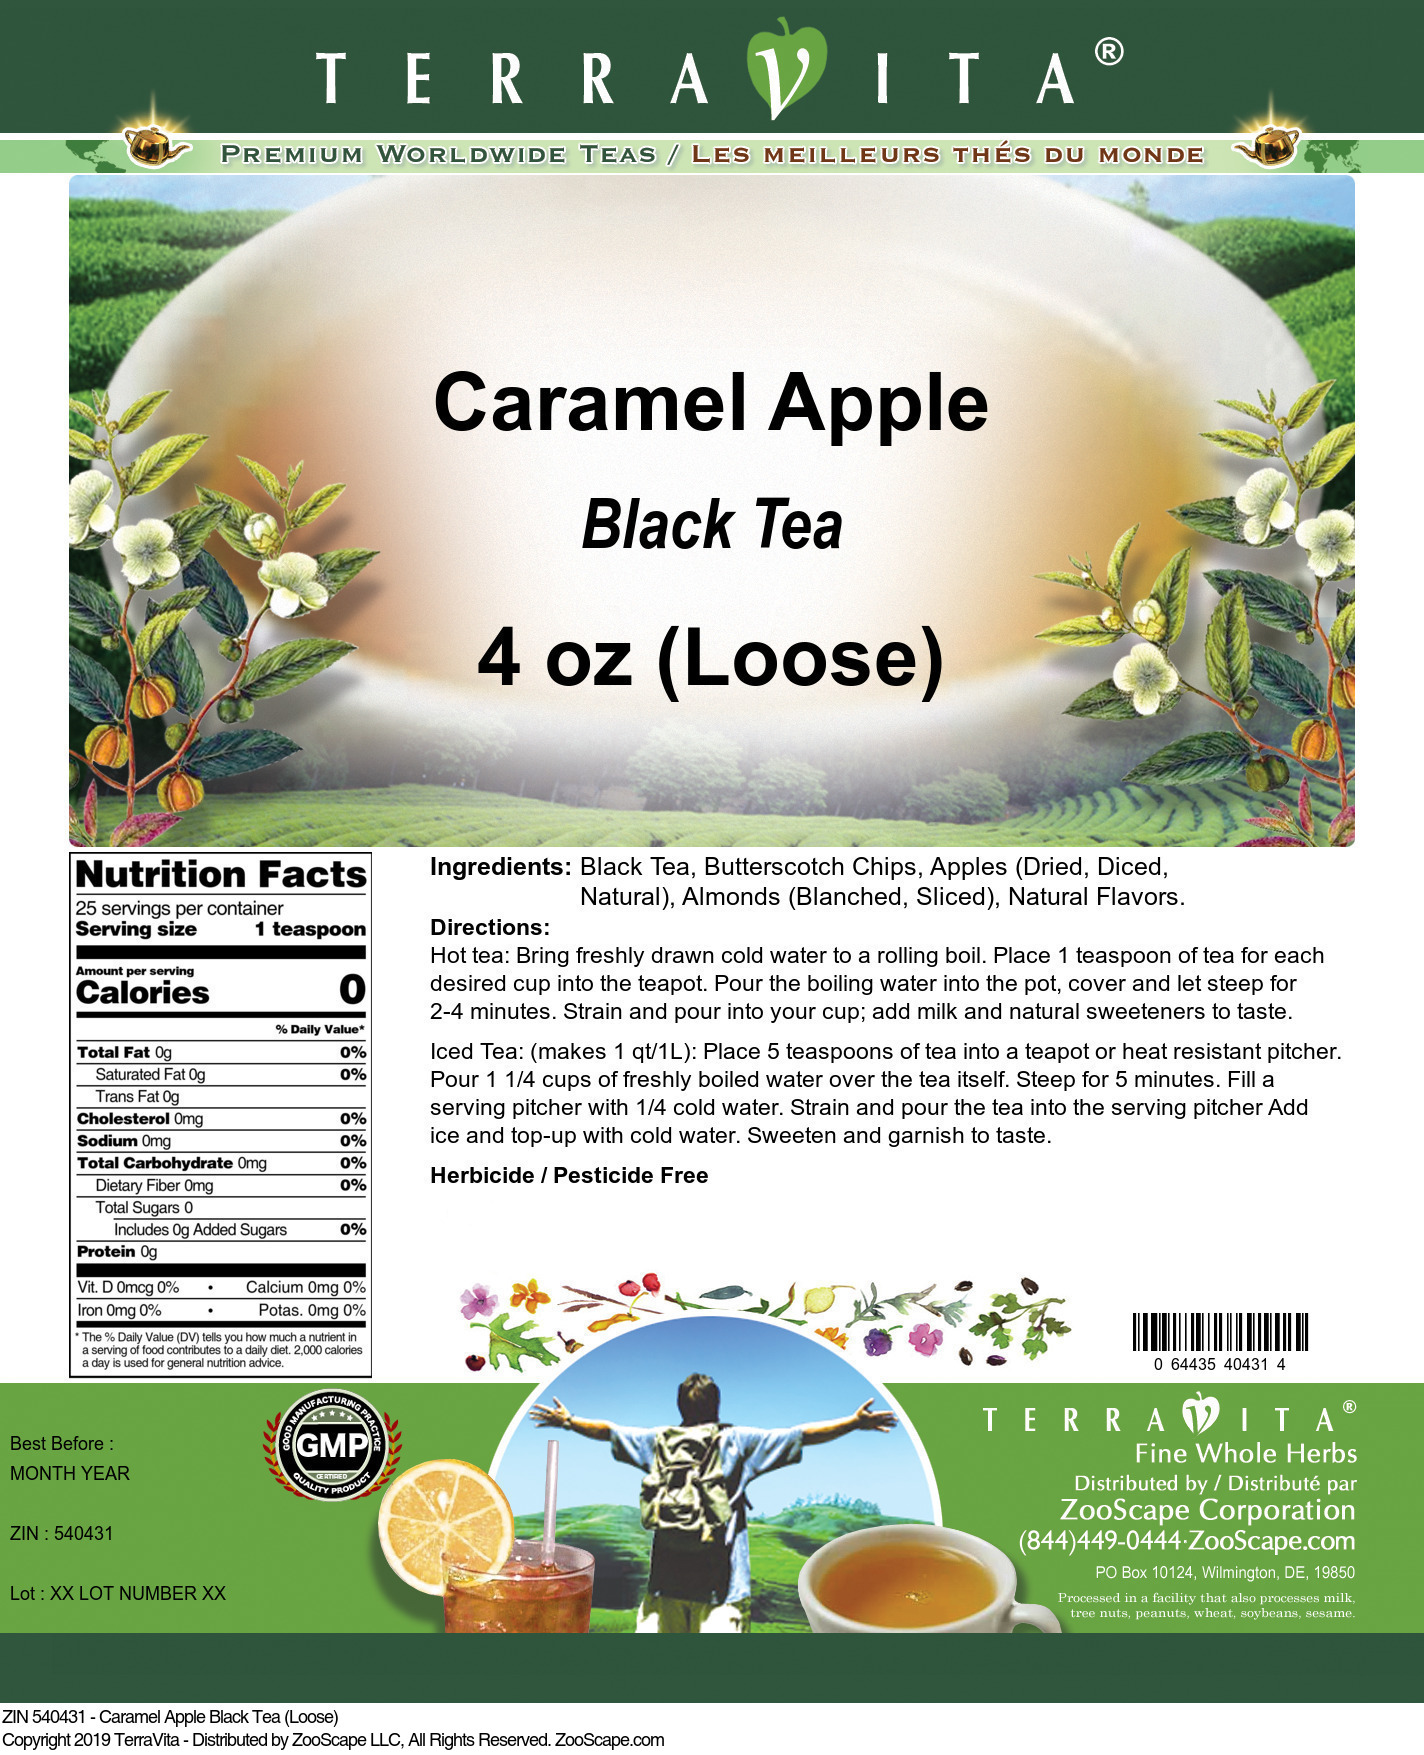 Caramel Apple Black Tea (Loose) - Label